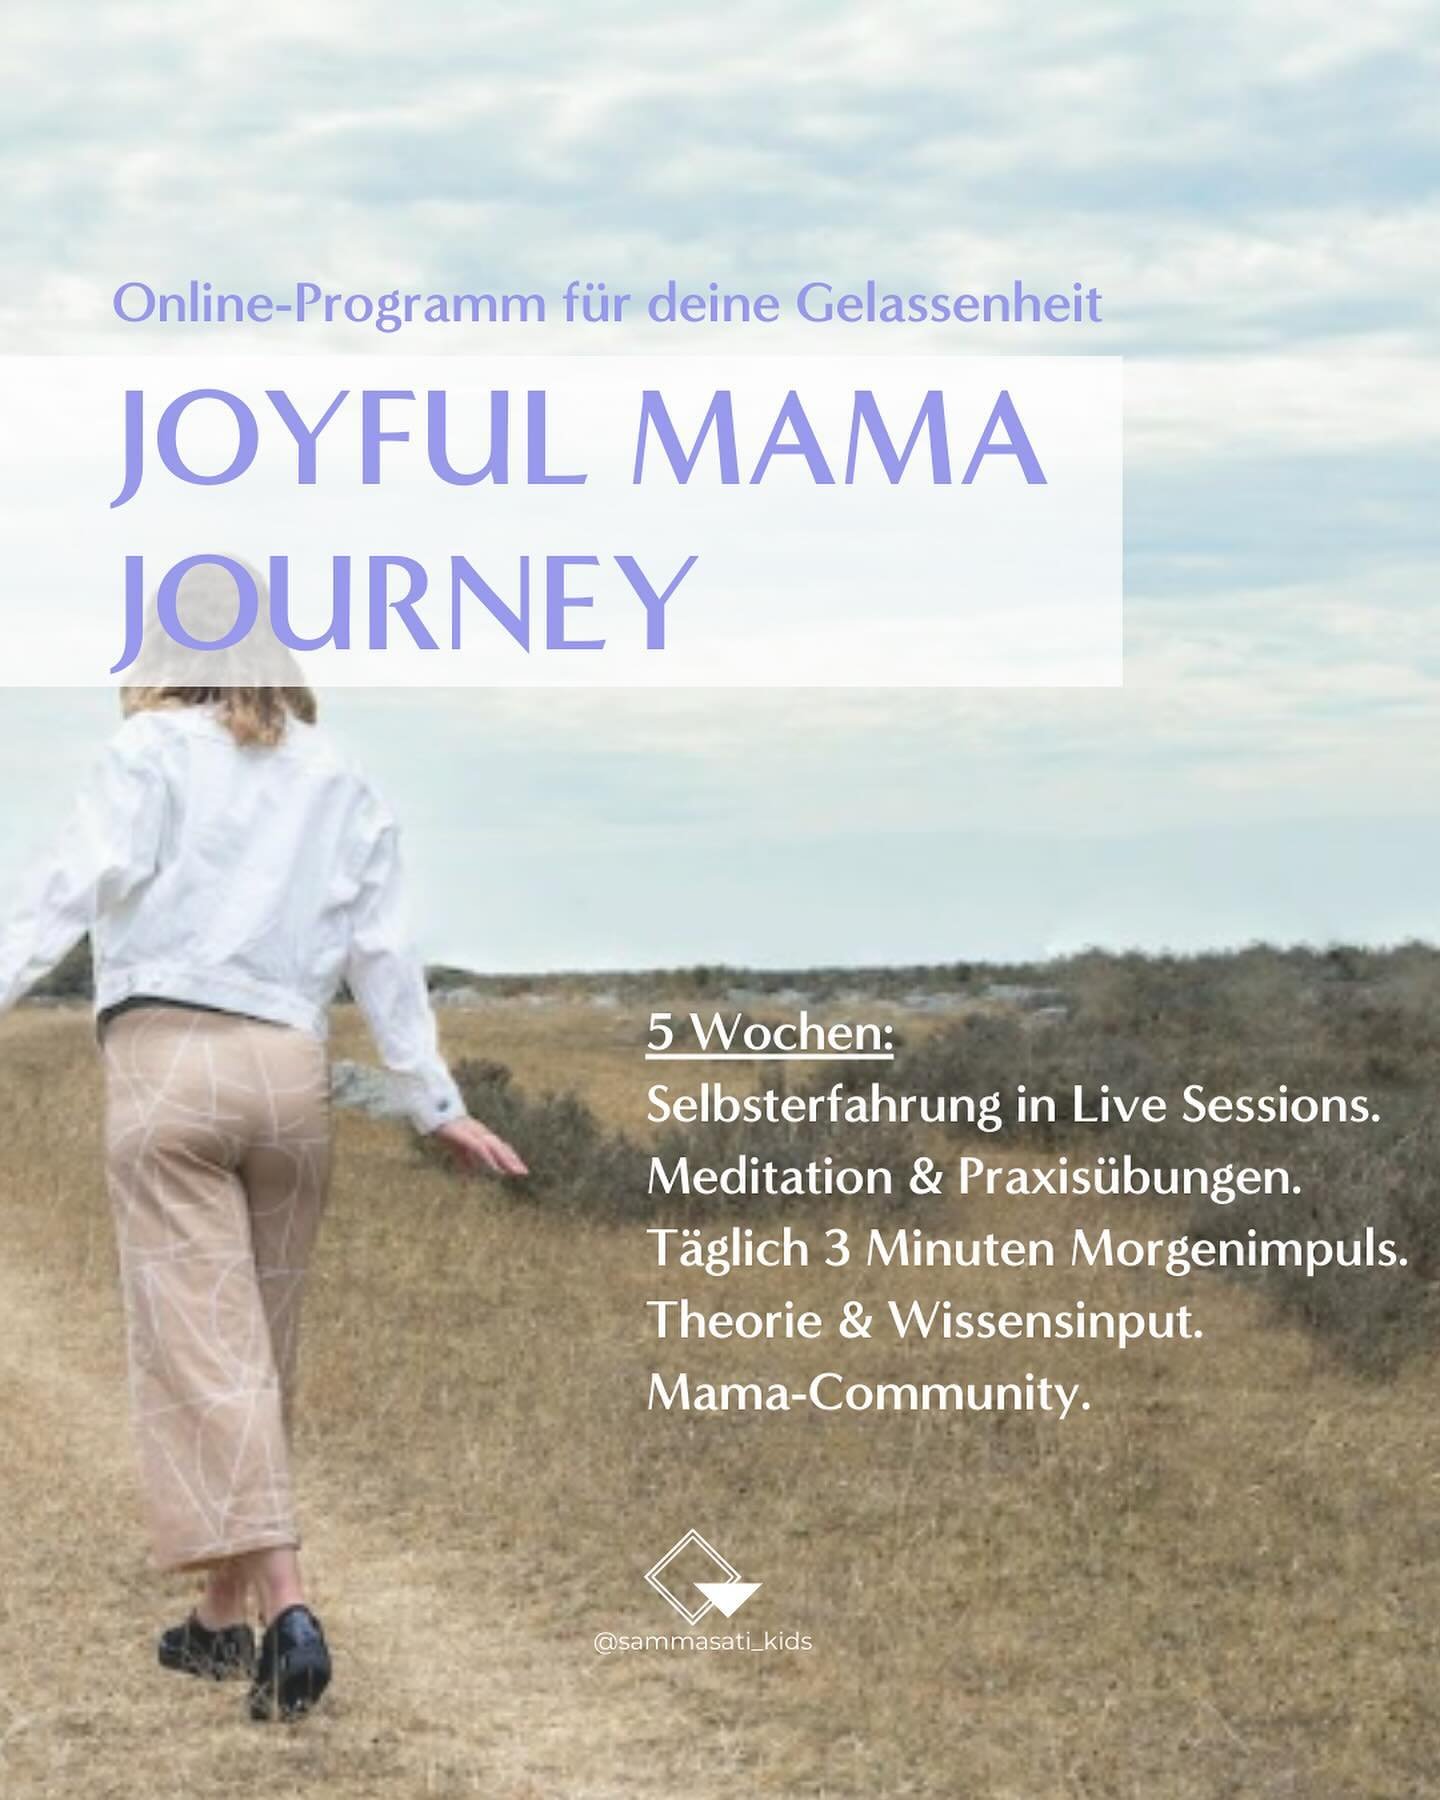 Die Joyful Mama Journey ist dein Weg hin zu einem gelasseneren Familienalltag voller Verbundenheit, weg von Stress ohne Land in Sicht.

Mit diesem Programm m&ouml;chte ich dir den Einstieg in ein bewusstes Familienleben voller Achtsamkeit, Selbstmitg